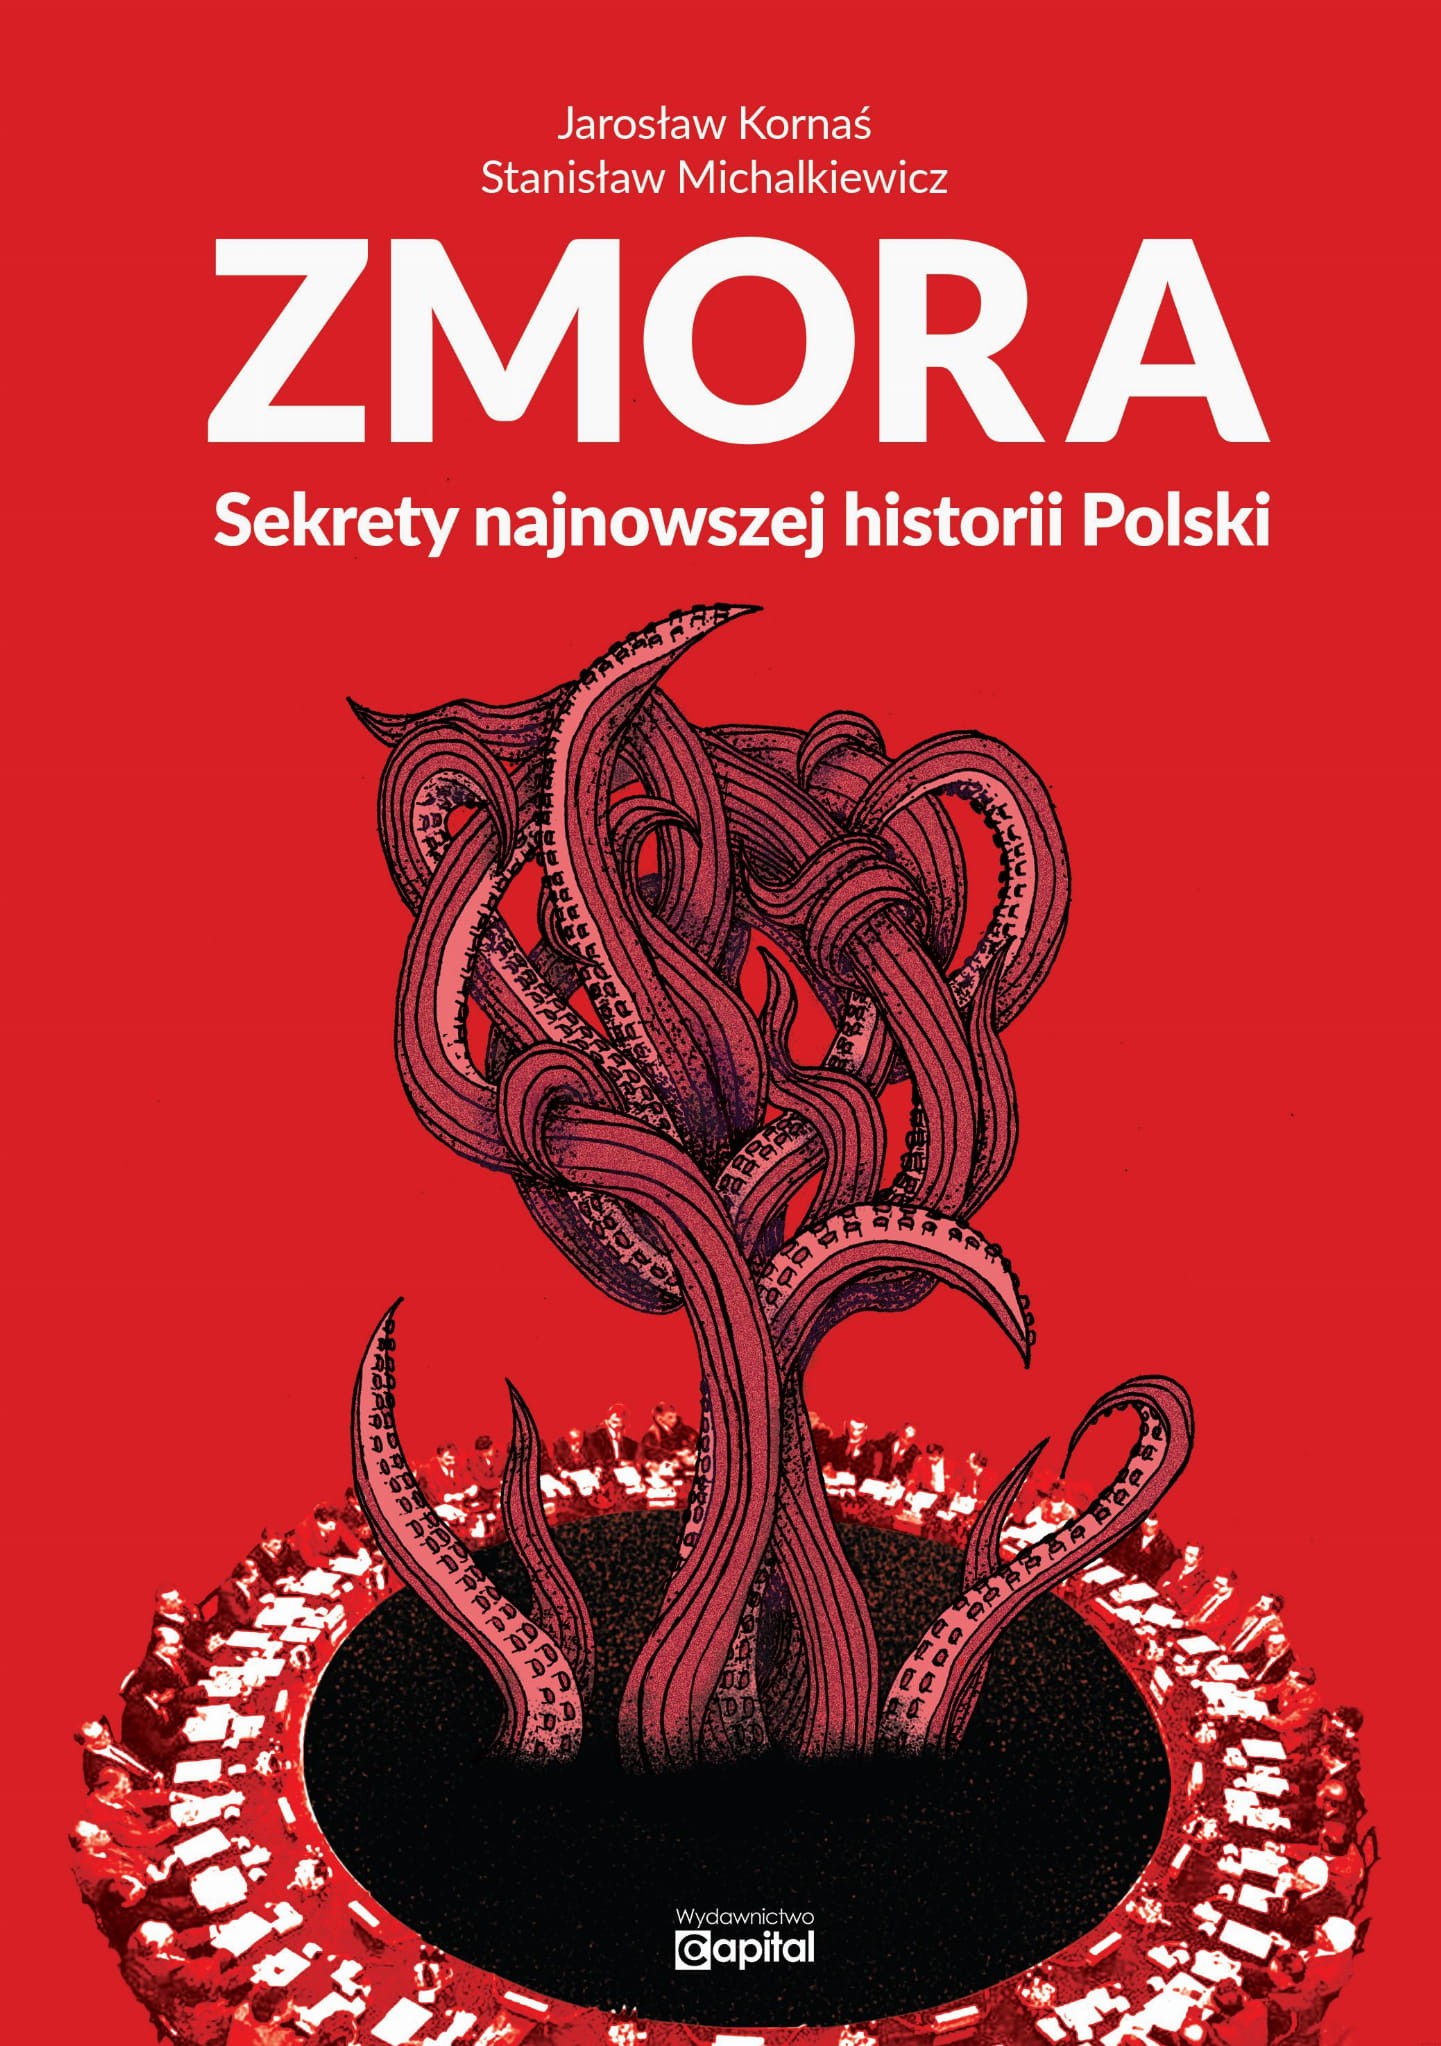 Zmora Sekrety najnowszej historii Polski (J.Kornaś St.Michalkiewicz)